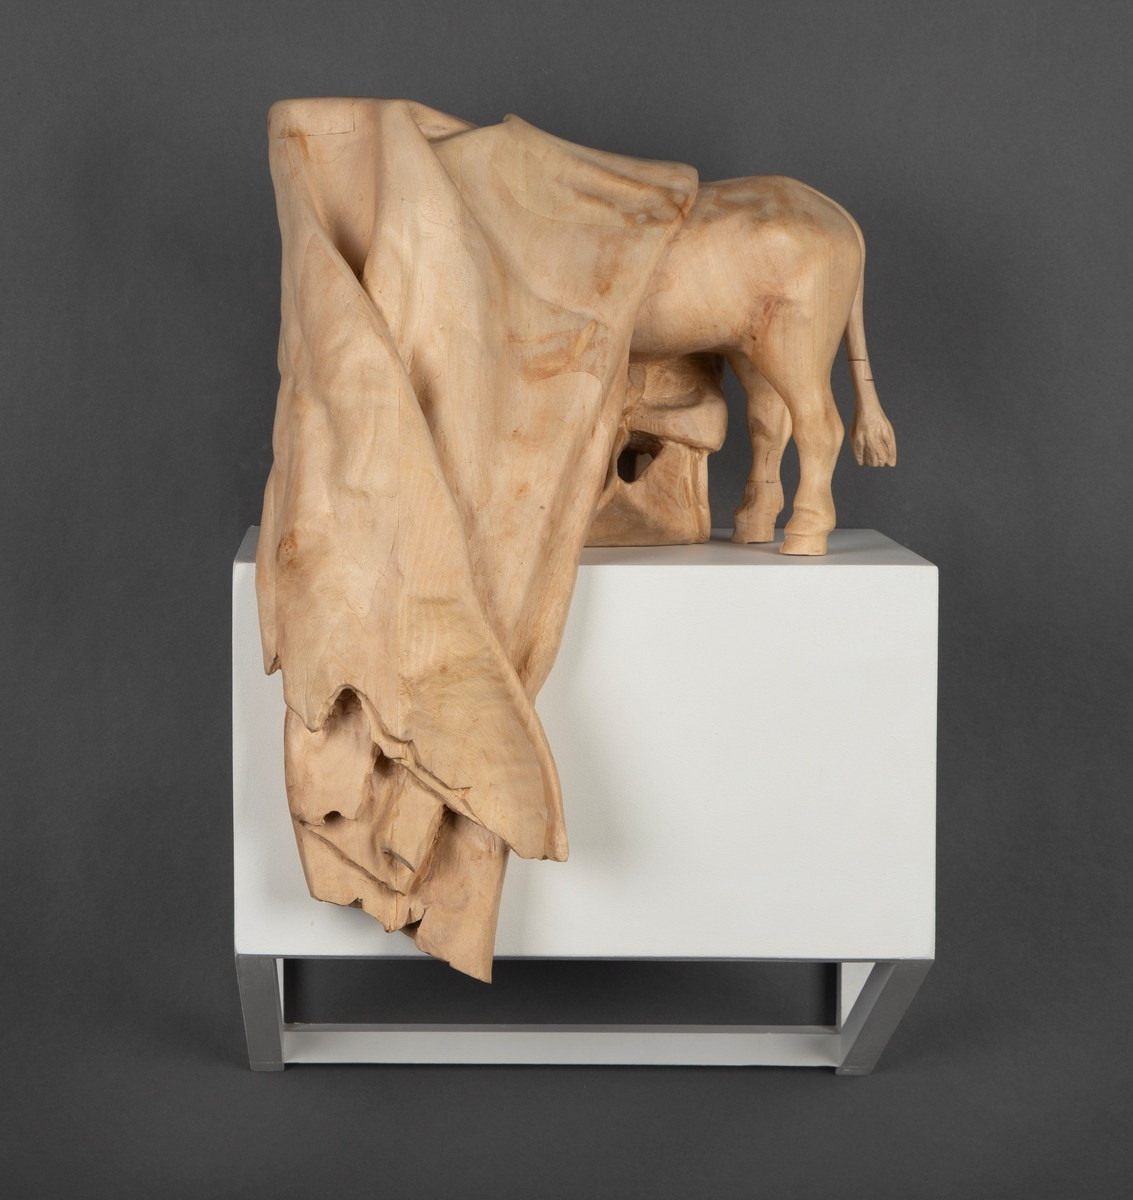 Treskulptur av en ku foldet inn i et tøystykke.